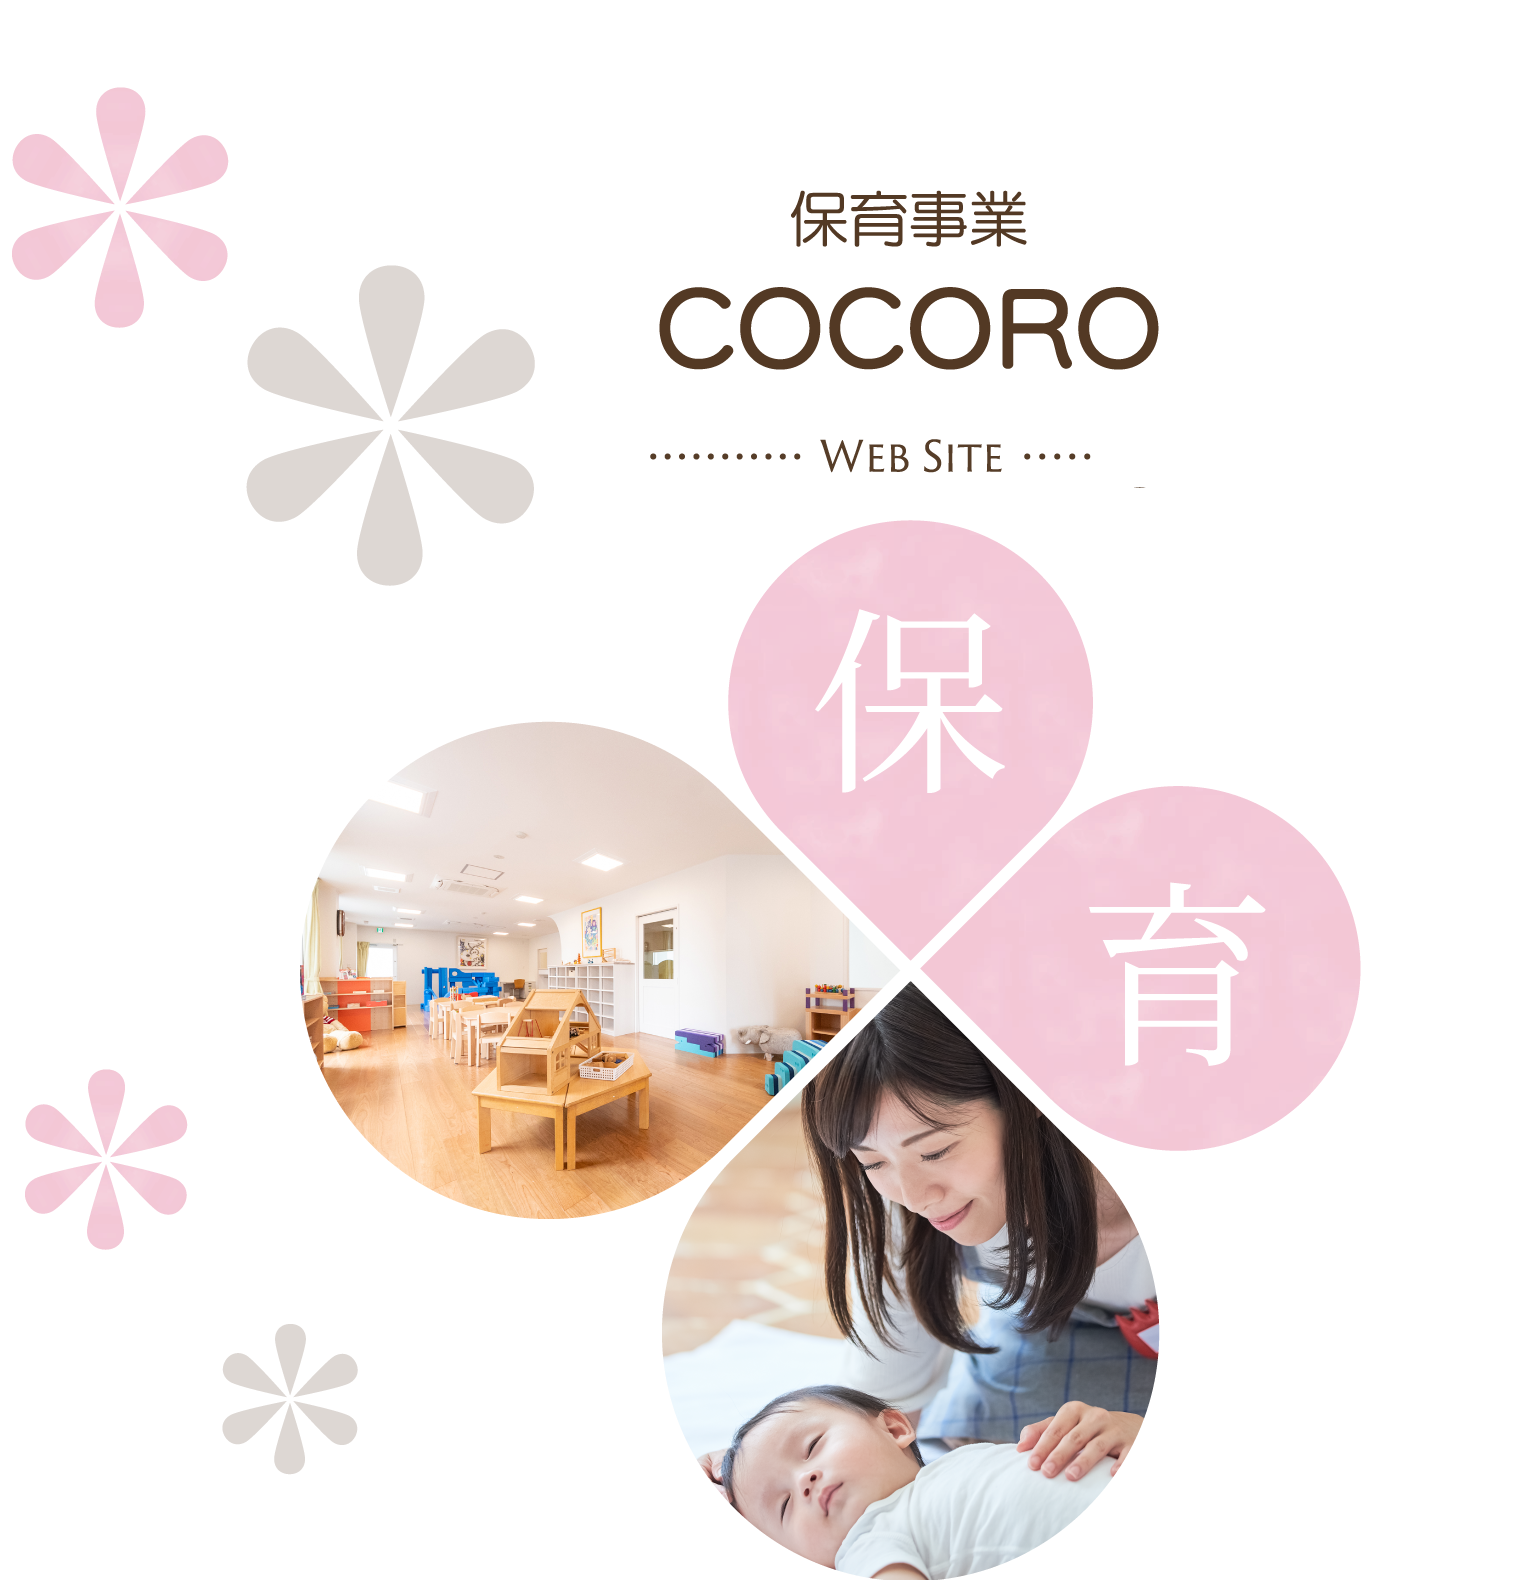 保育事業 COCORO Web Site